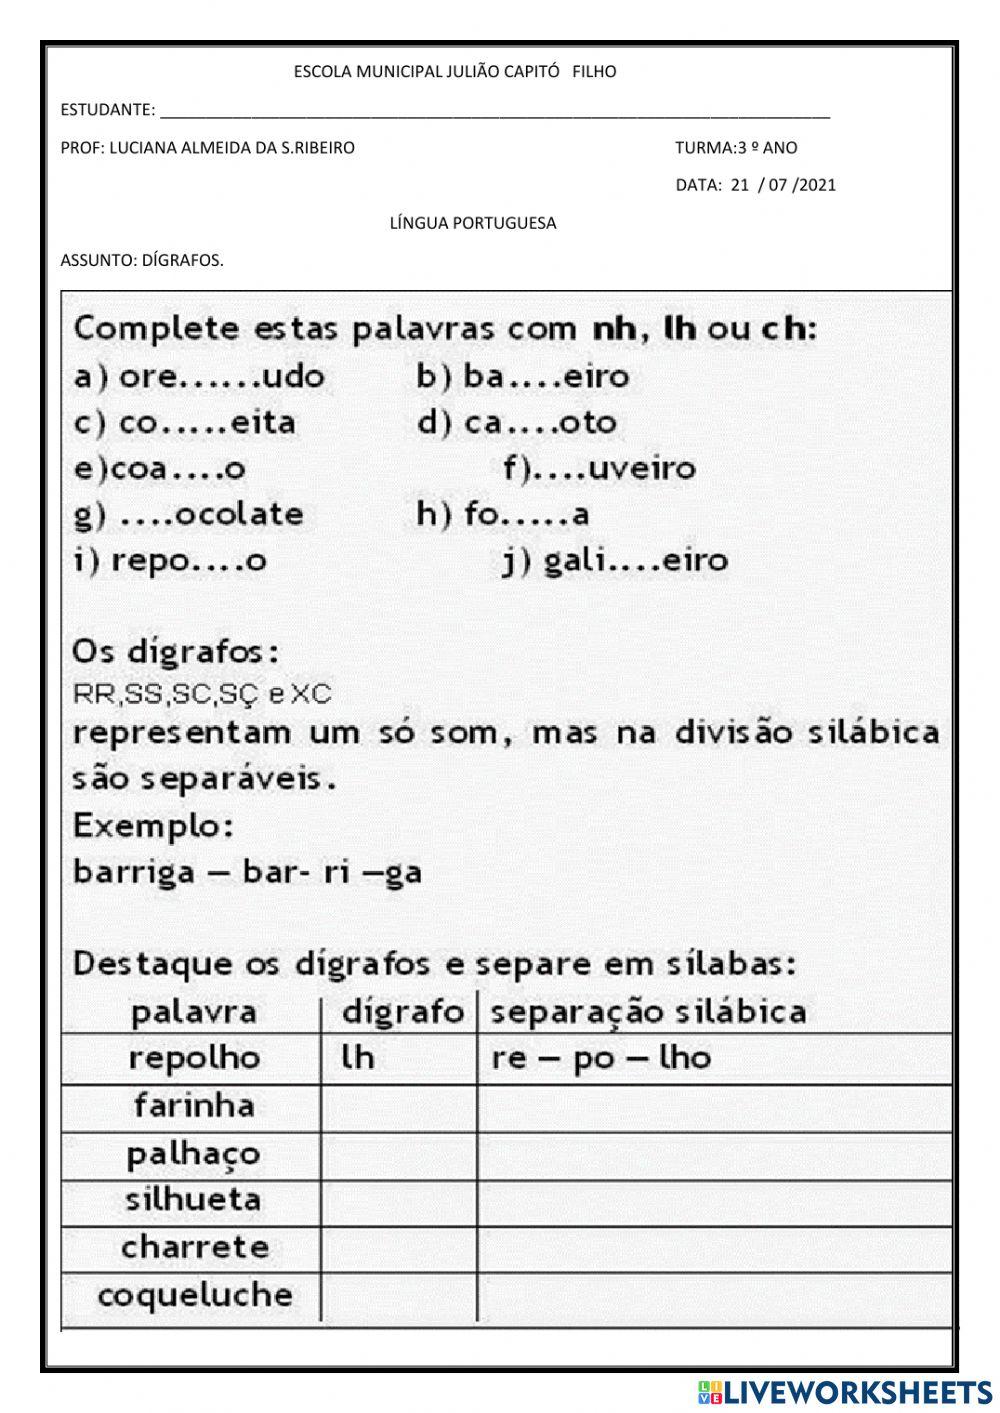 Aula de língua portuguesa